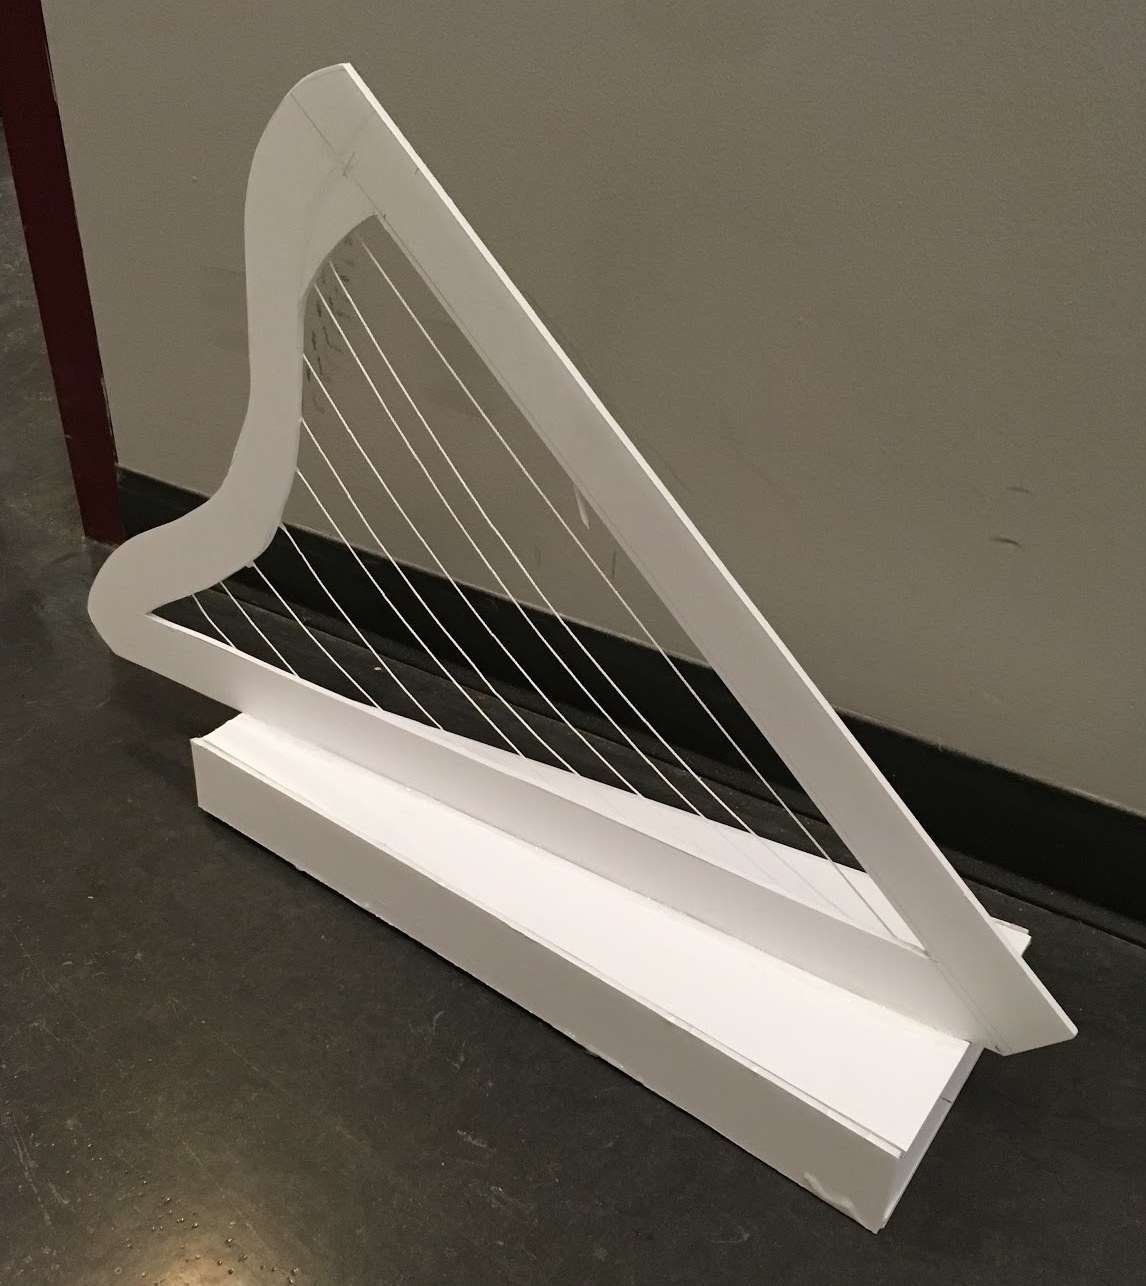 Foamcore harp prototype